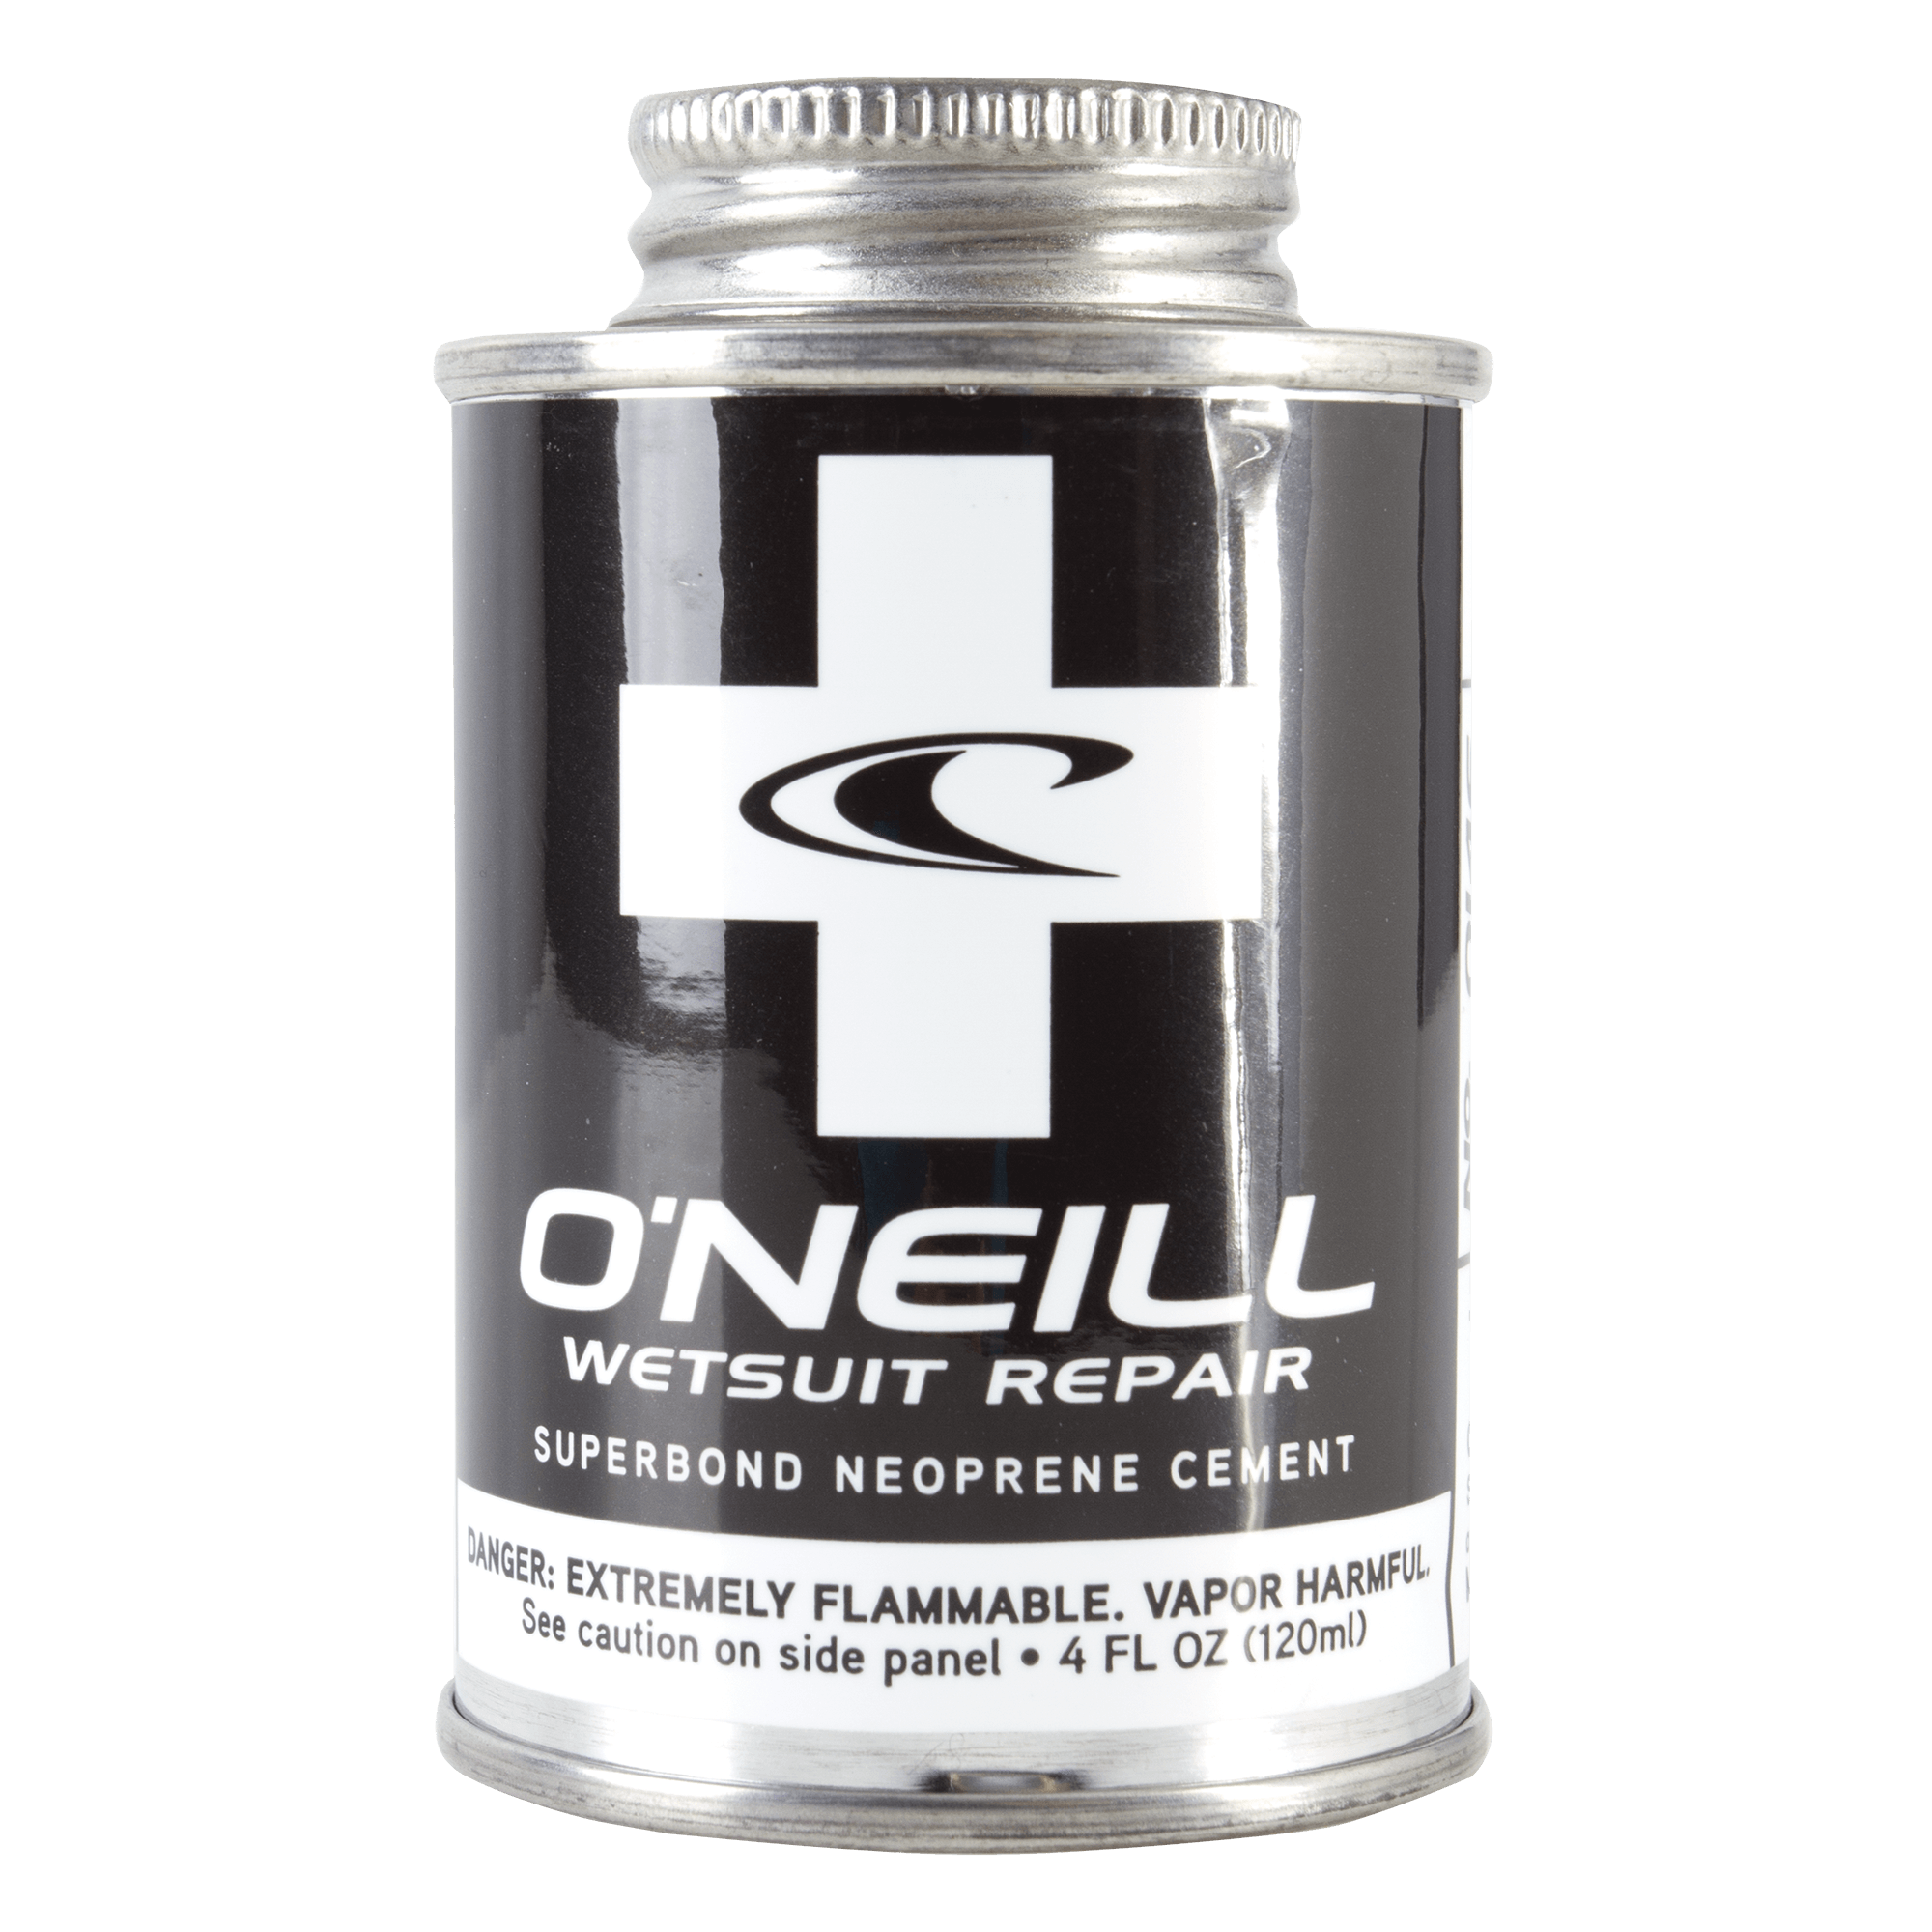 O'Neill Neoprene Cement